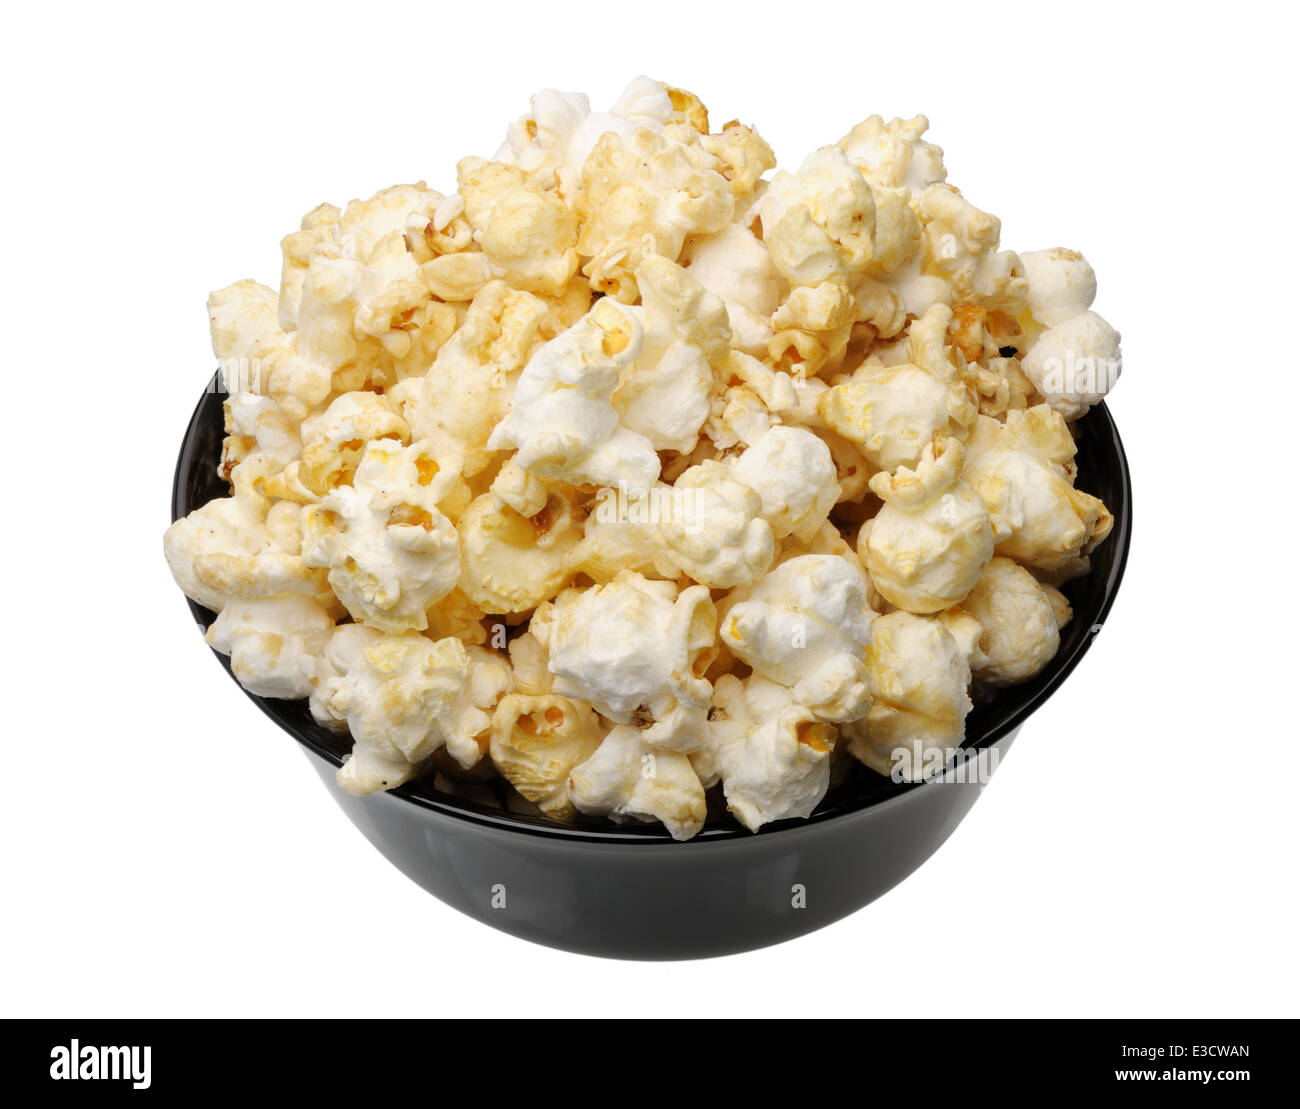 Popcorn dans une tasse noire sur un fond blanc, isolé Banque D'Images